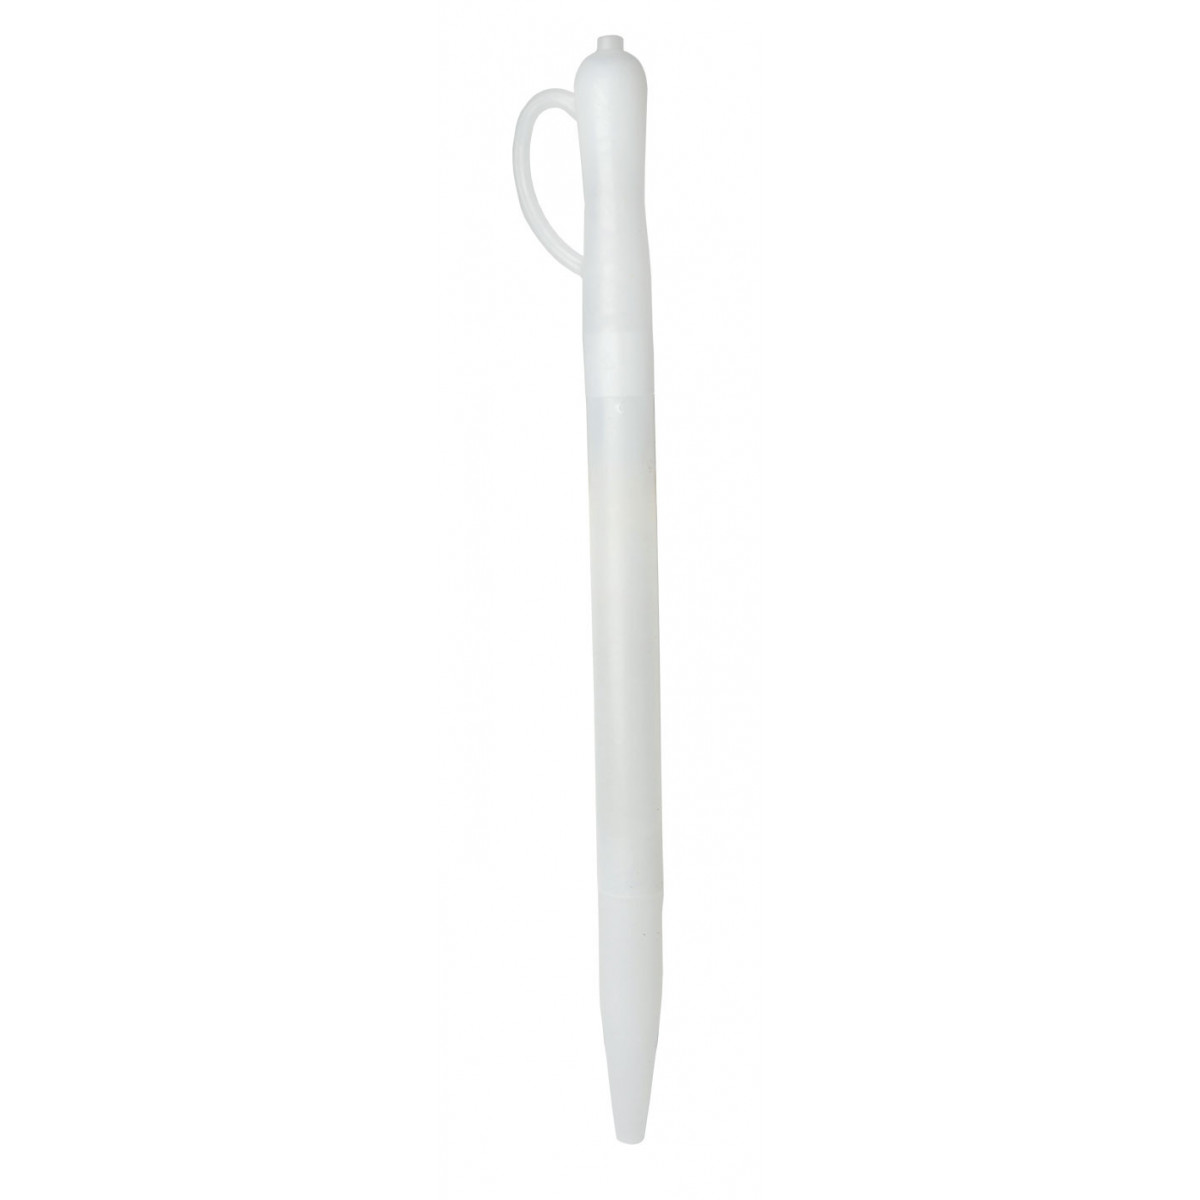 Probenahme-Pipette Kunststoff weiß mit Handgriff 50 cm